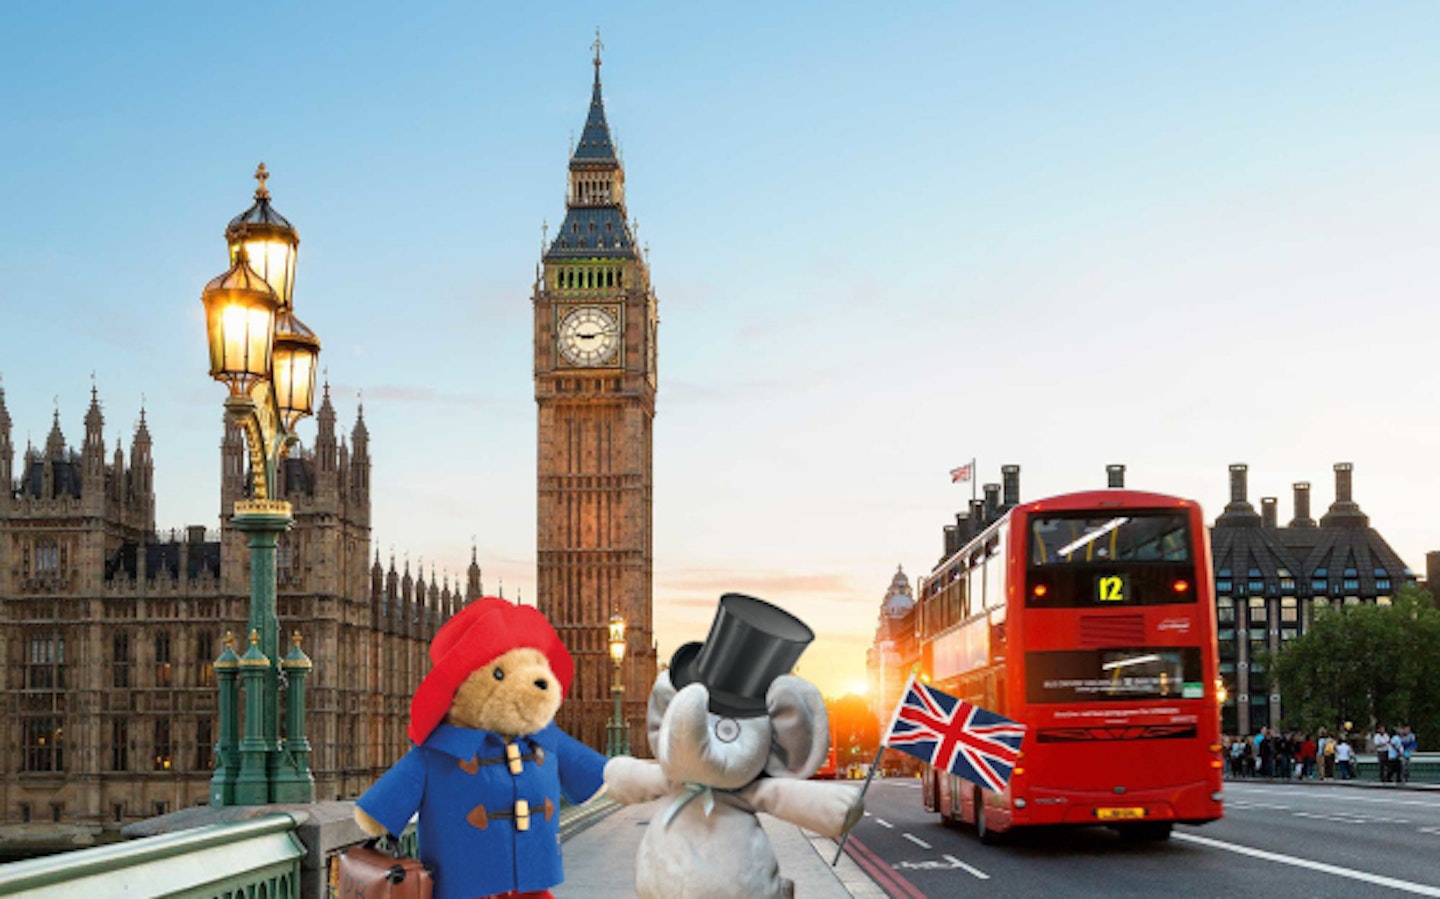 Photoshop elephant toy visits London